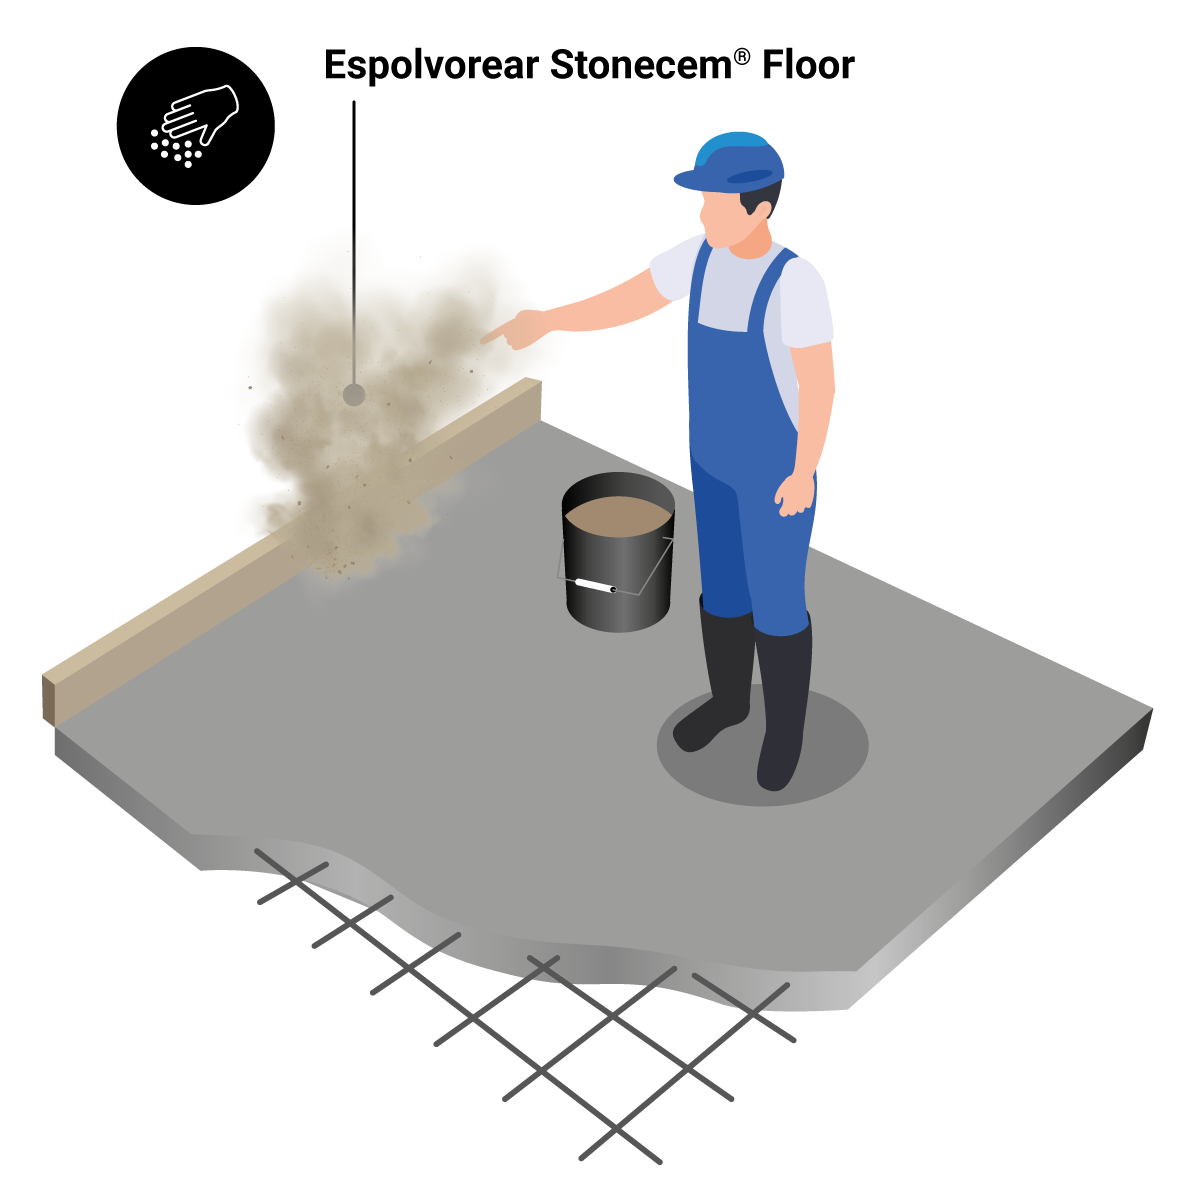 5. lépés: lenyomatott beton alkalmazása a padlón